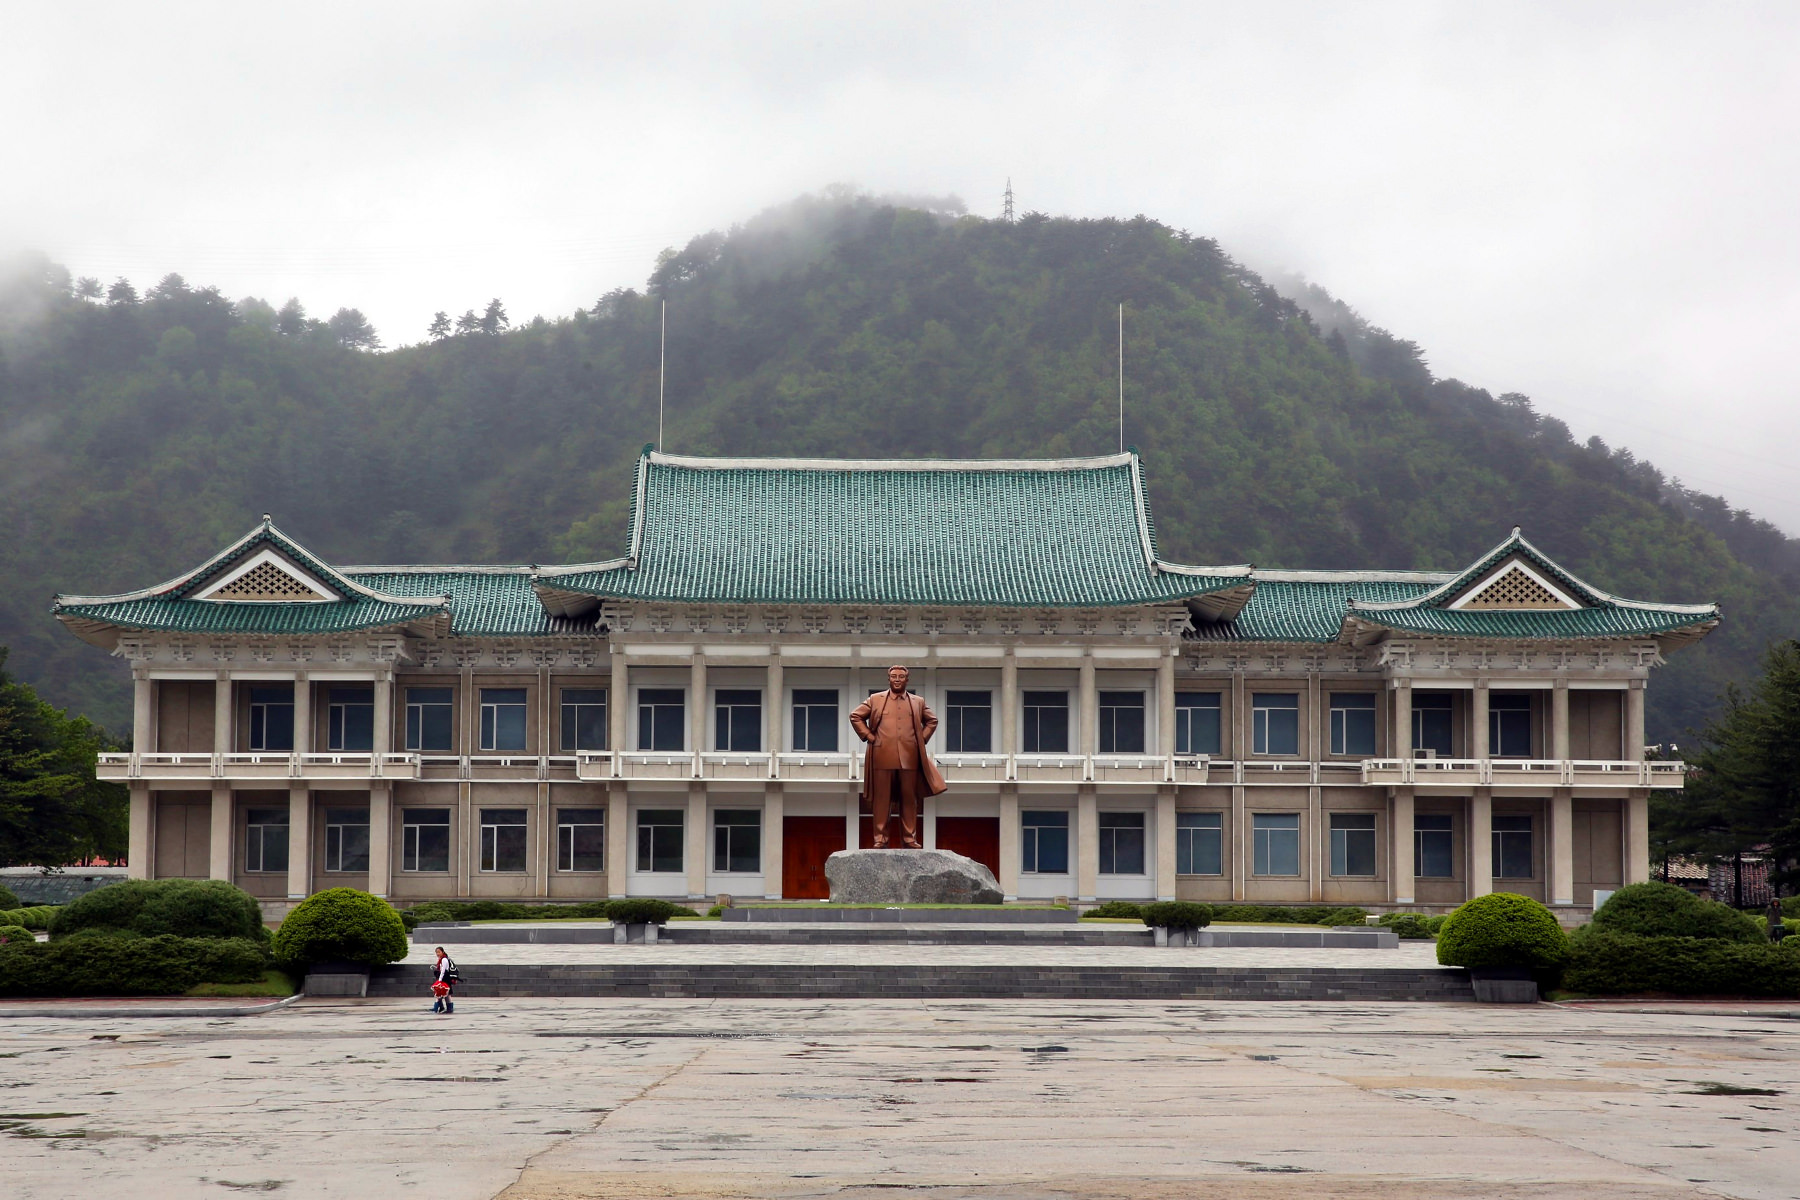 La estatua de bronce del presidente Kim Il Sung en el condado de Hyangsan, Monte Myohyang, Corea del Norte (RPDC). Viaje organizado por KTG Tours